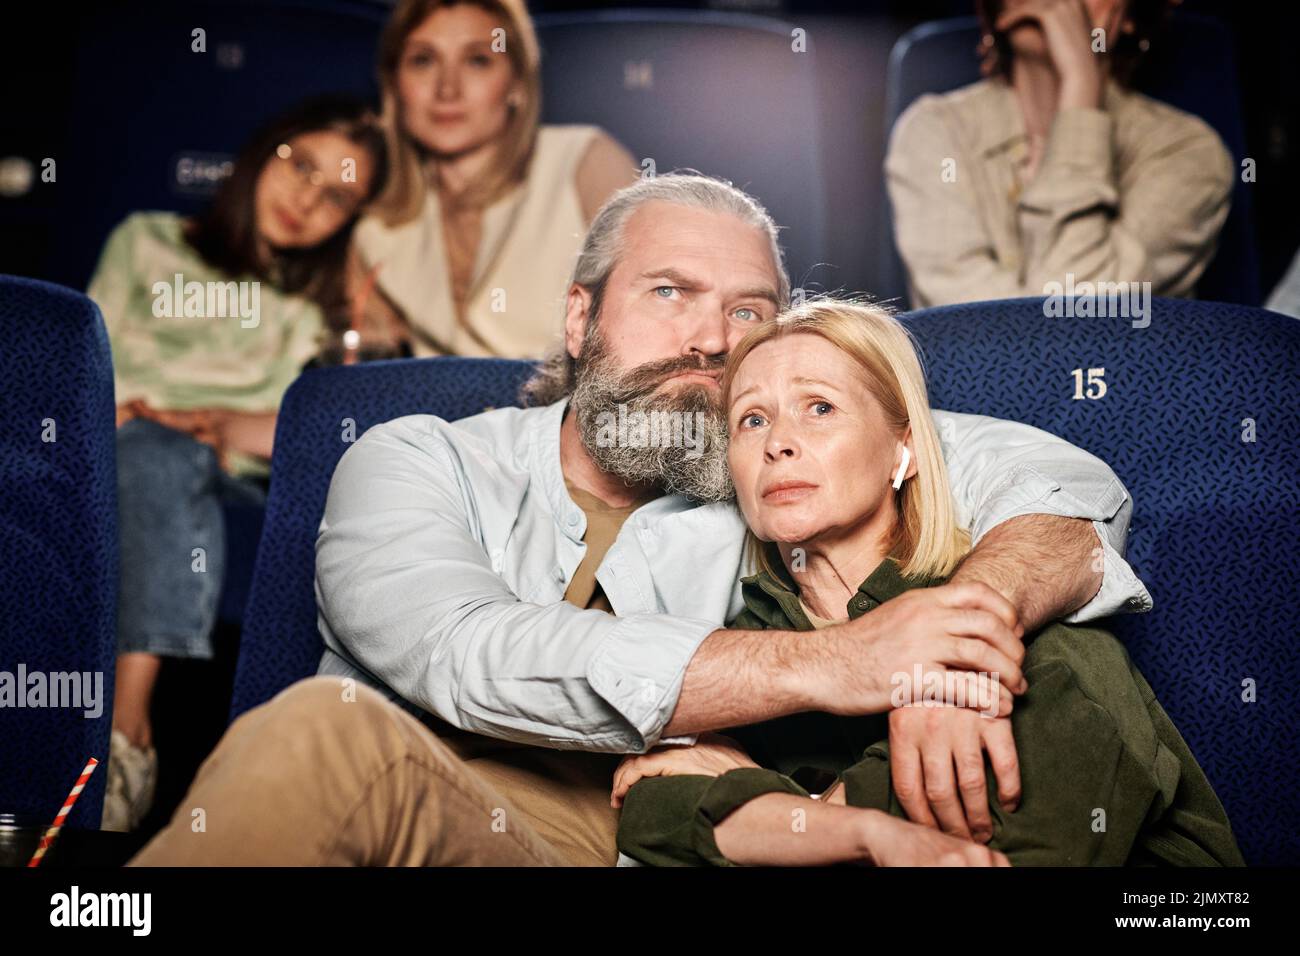 Hombre caucásico adulto con barba en la cara abrazando a su esposa mientras ve una triste película dramática en el cine Foto de stock